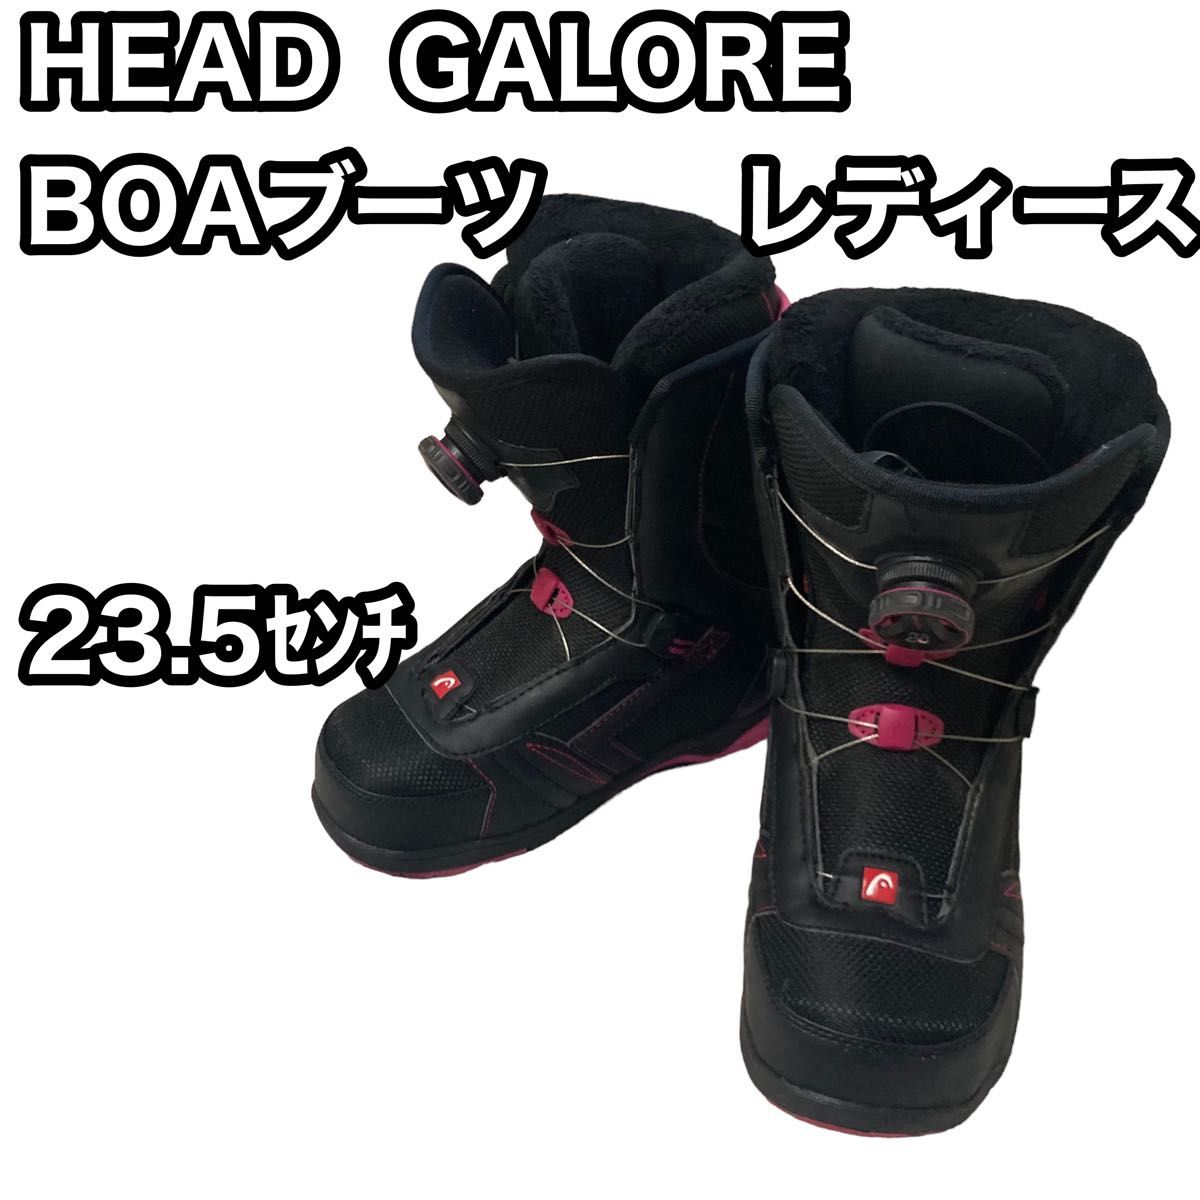 美品 HEAD GALORE BOA 23.5cm スノボブーツ - スノーボード